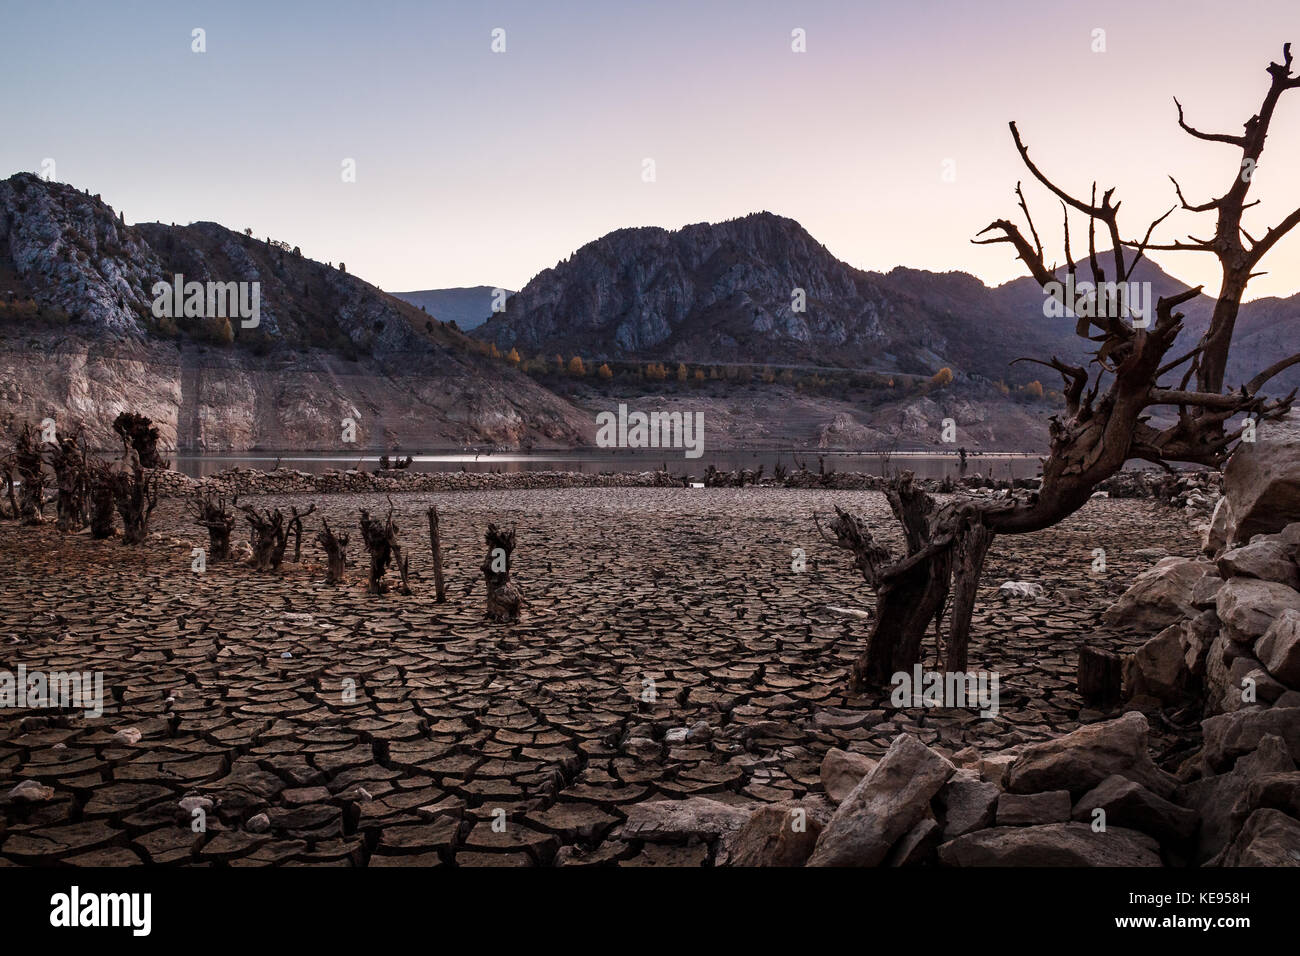 Darstellung der Dürre im Norden Spaniens, mit einem trockenen Behälter in der Nähe von Leon, mit einer schockierenden Risse im Boden und tote Bäume zuvor mit Wasser bedeckt. Stockfoto